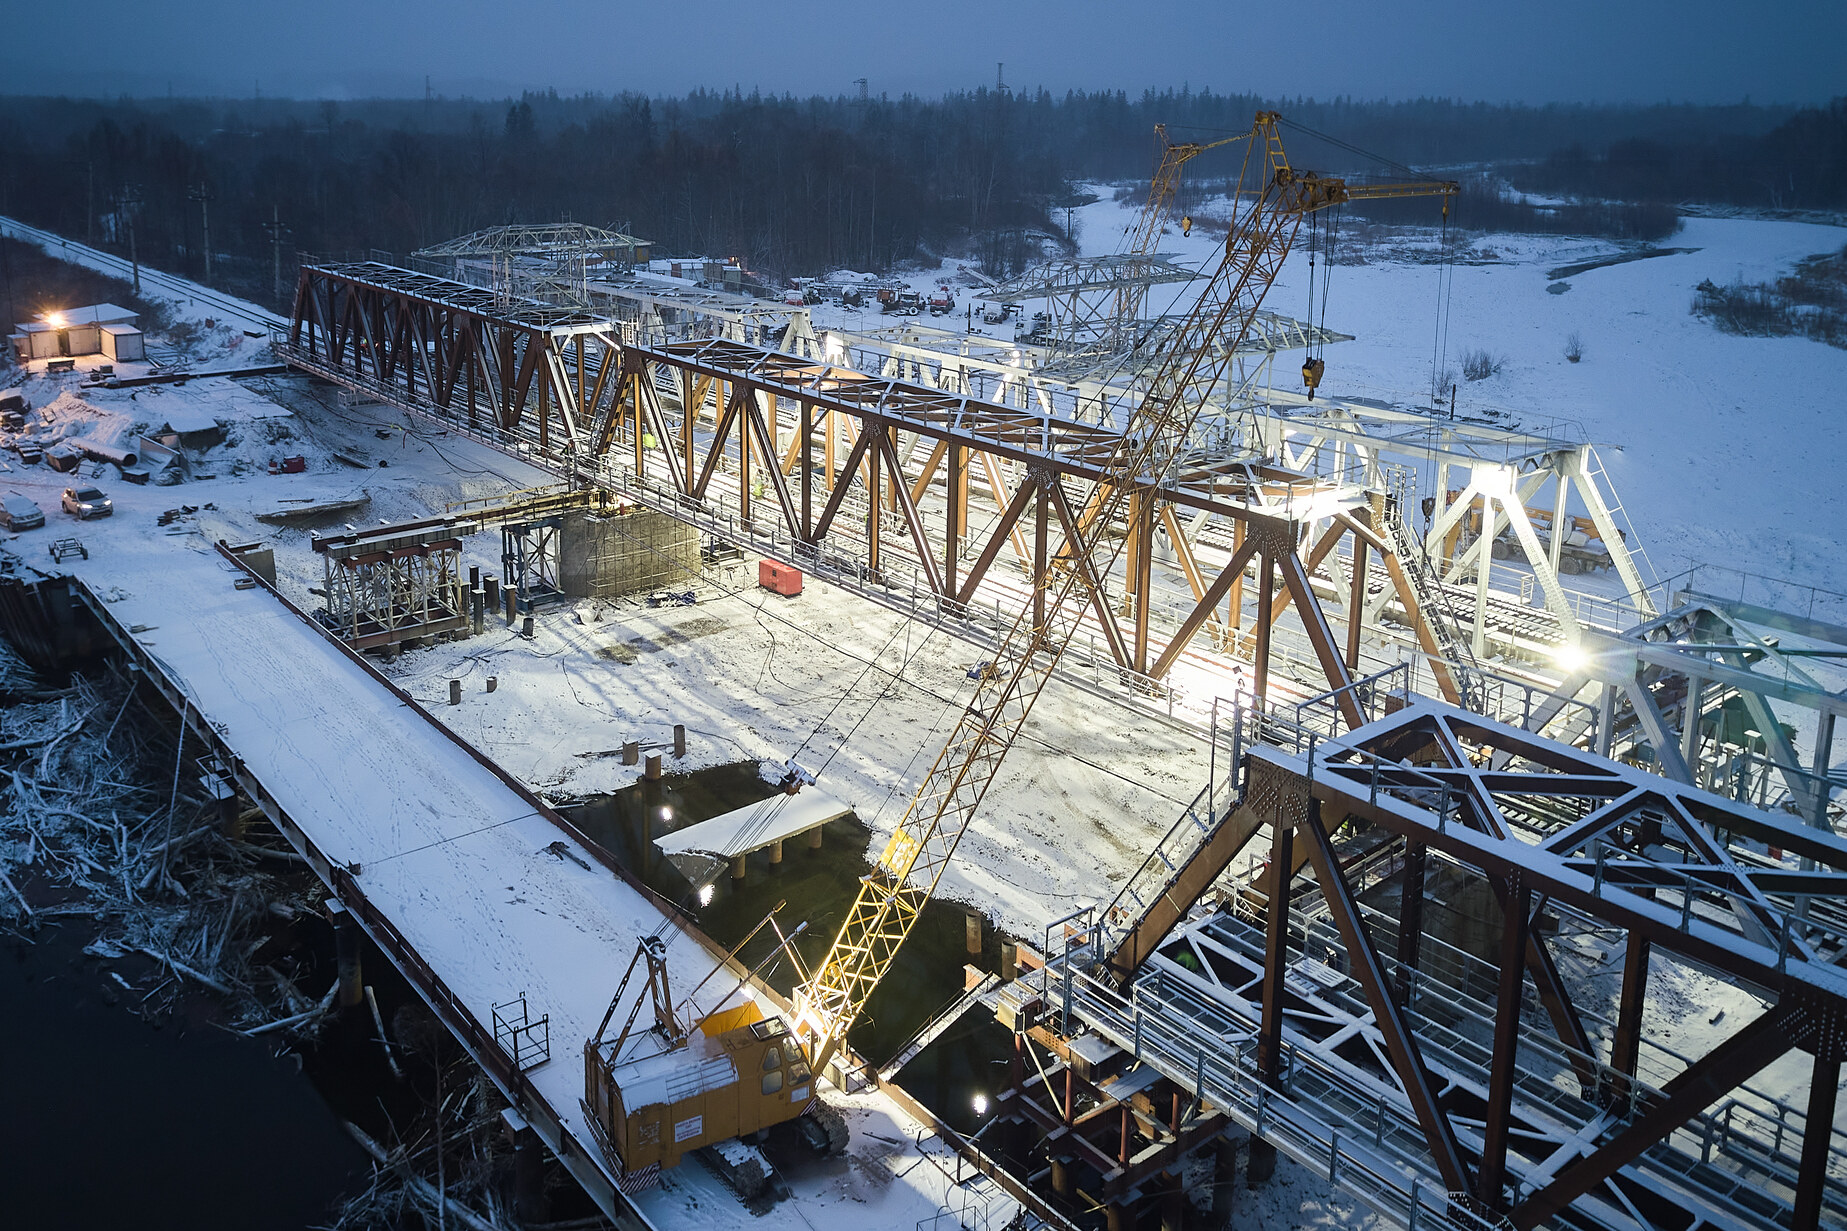 Реконструкция моста 1 пути на 3621 км ПК6 участка Новый Ургал -Комсомольск-на-Амуре Дальневосточной железной дороги (строится)